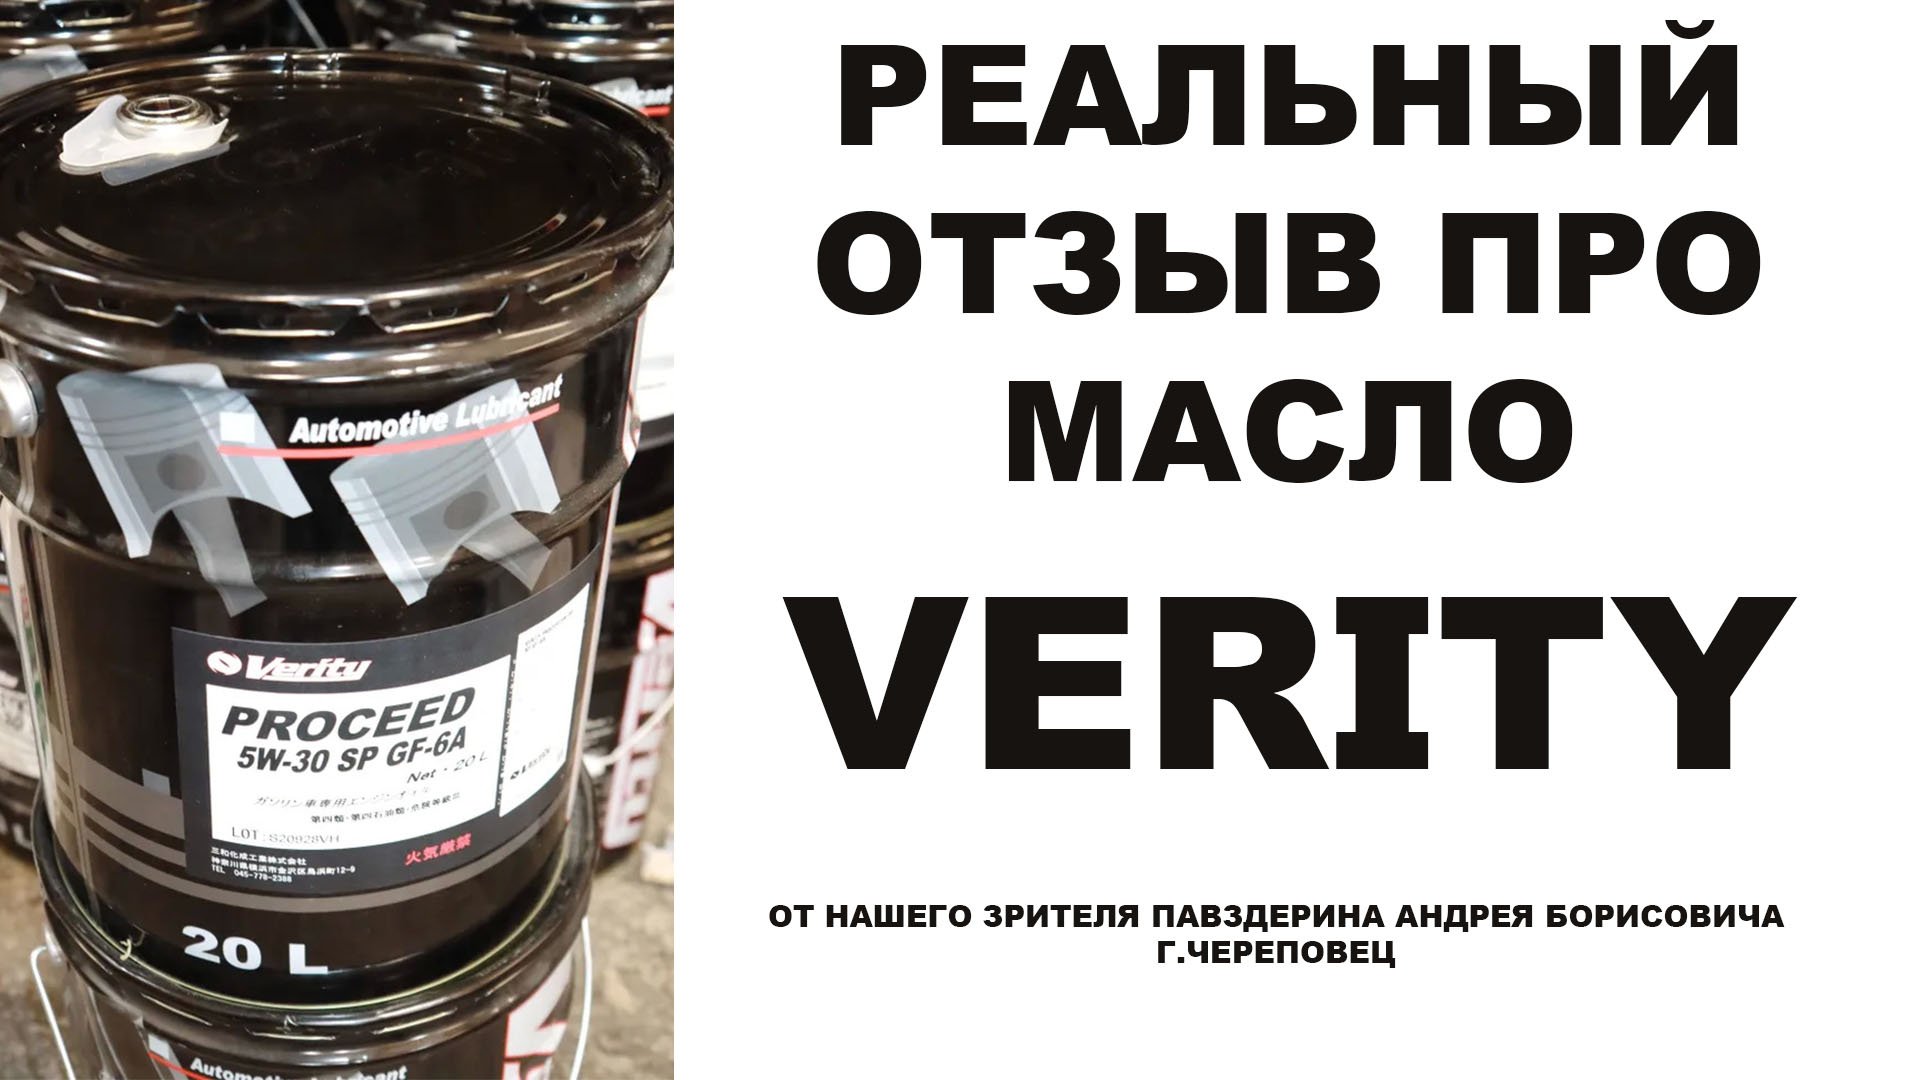 Реальный отзыв про моторное масло VERITY от нашего зрителя Павздерина Андрея  г. Череповец.